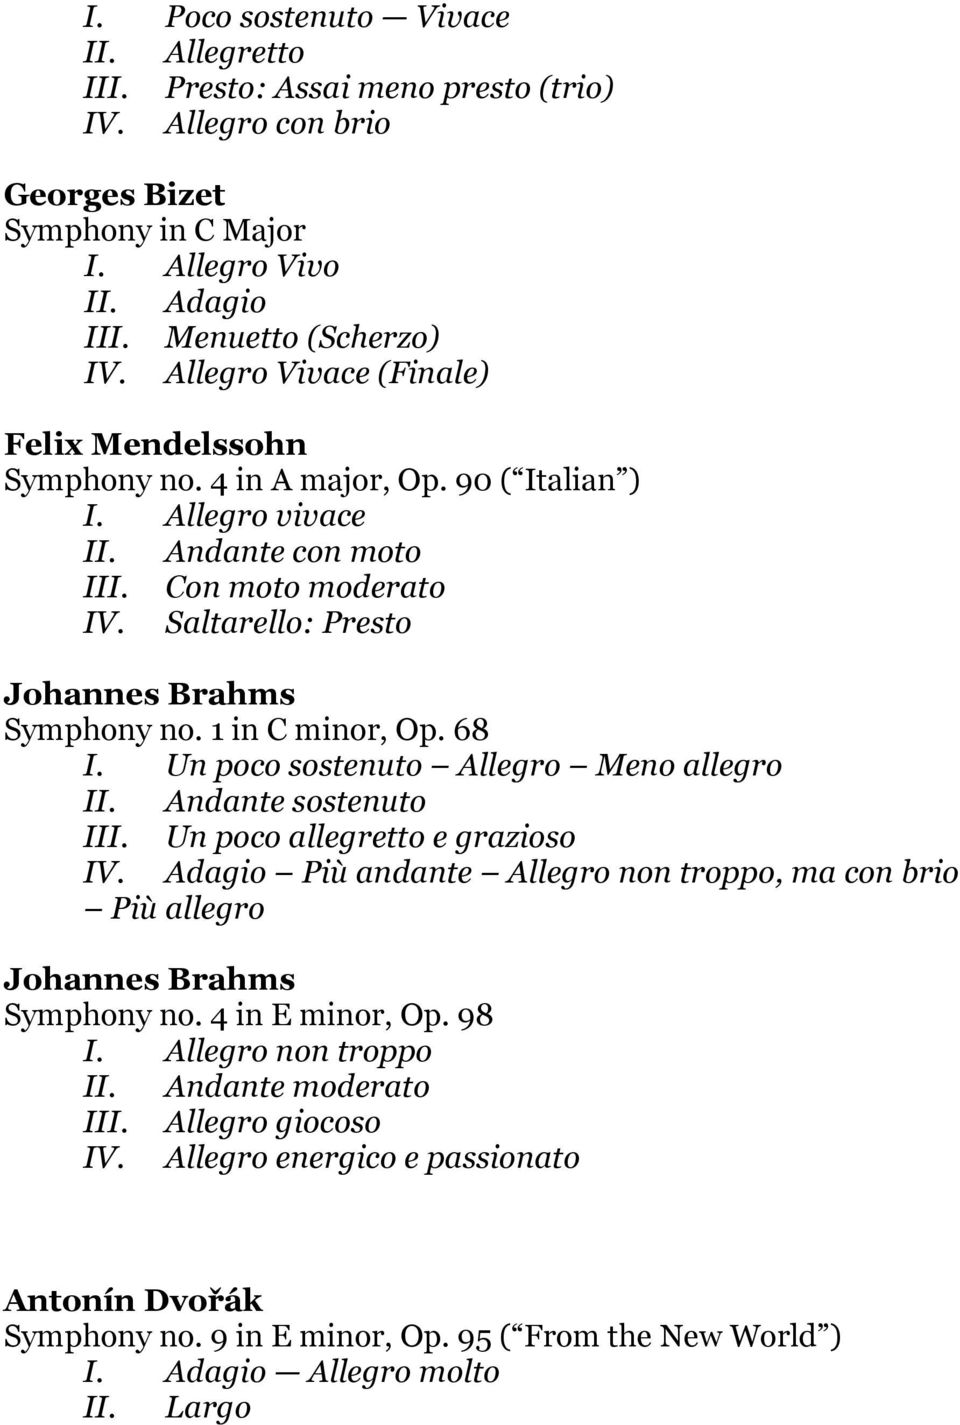 Saltarello: Presto Johannes Brahms Symphony no. 1 in C minor, Op. 68 I. Un poco sostenuto Allegro Meno allegro II. Andante sostenuto III. Un poco allegretto e grazioso IV.